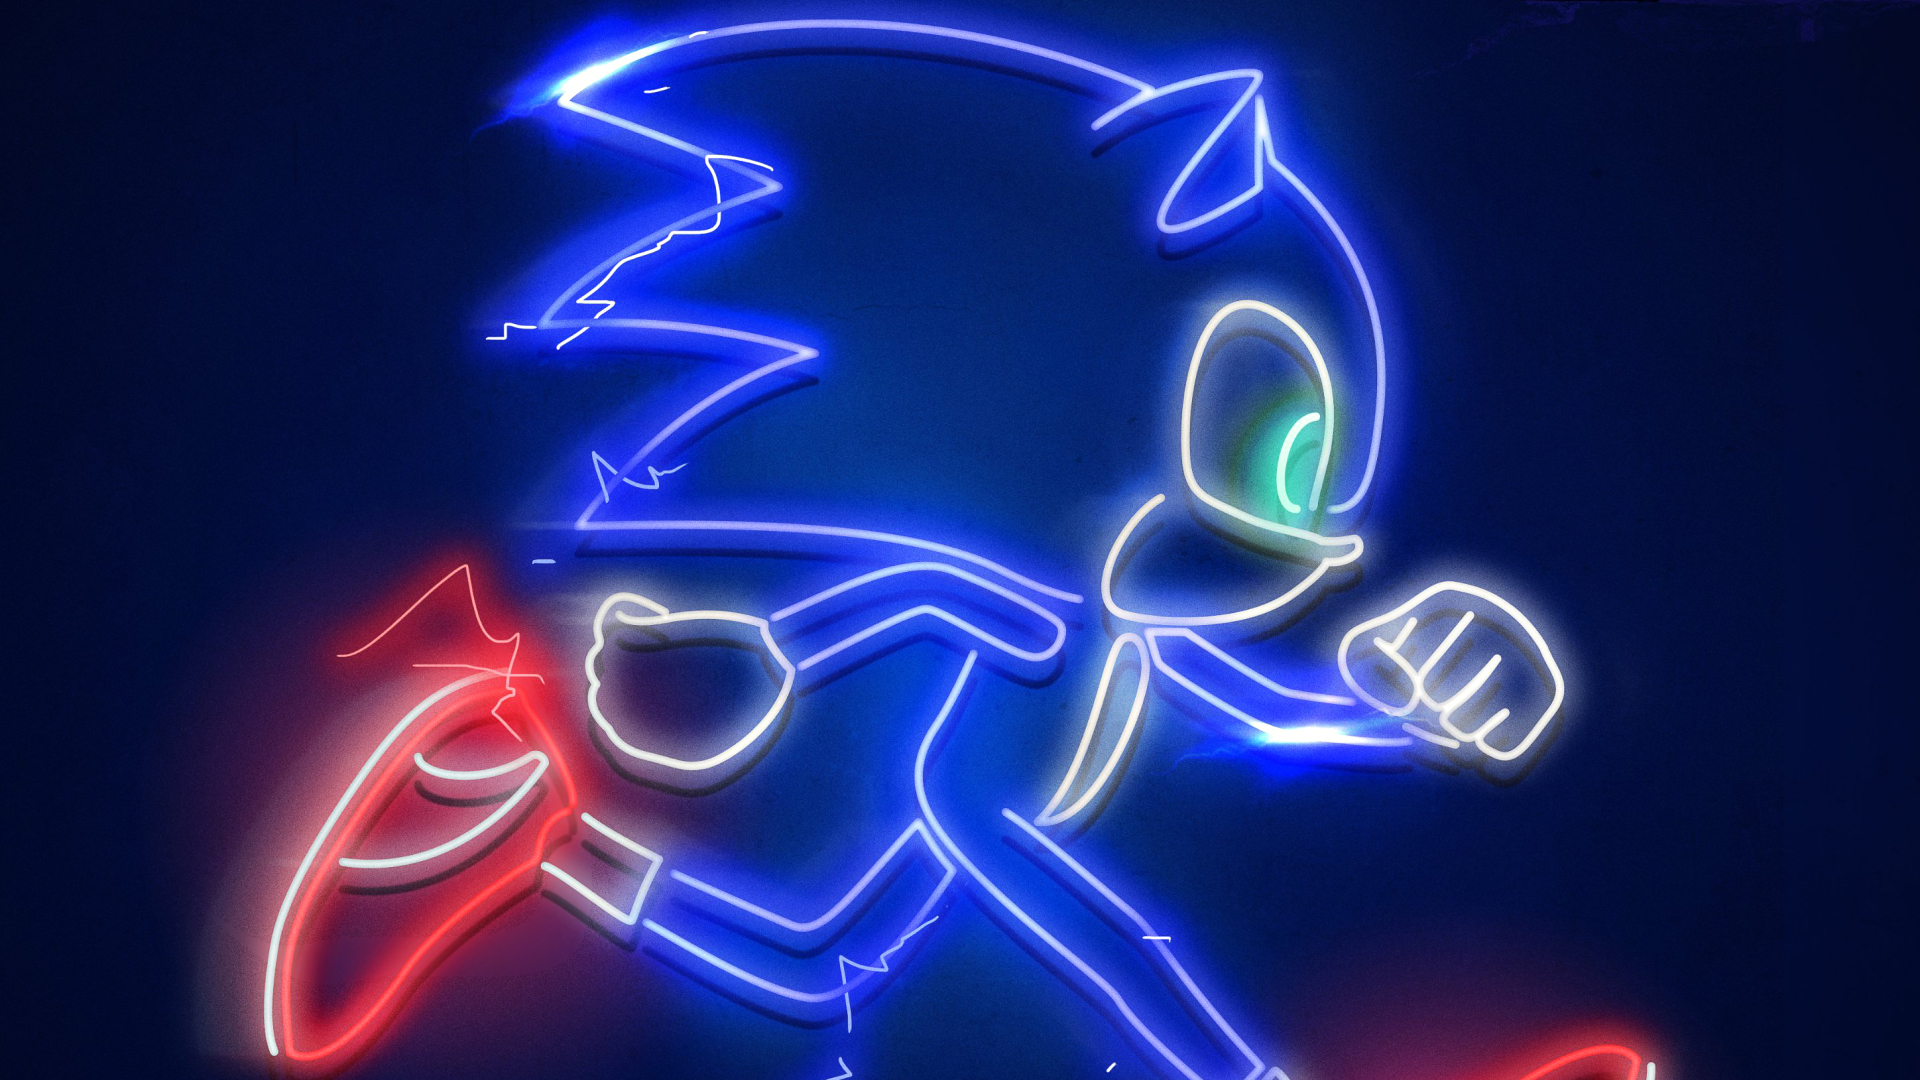 Sonic The Hedgehog 2 Desktop Wallpaper